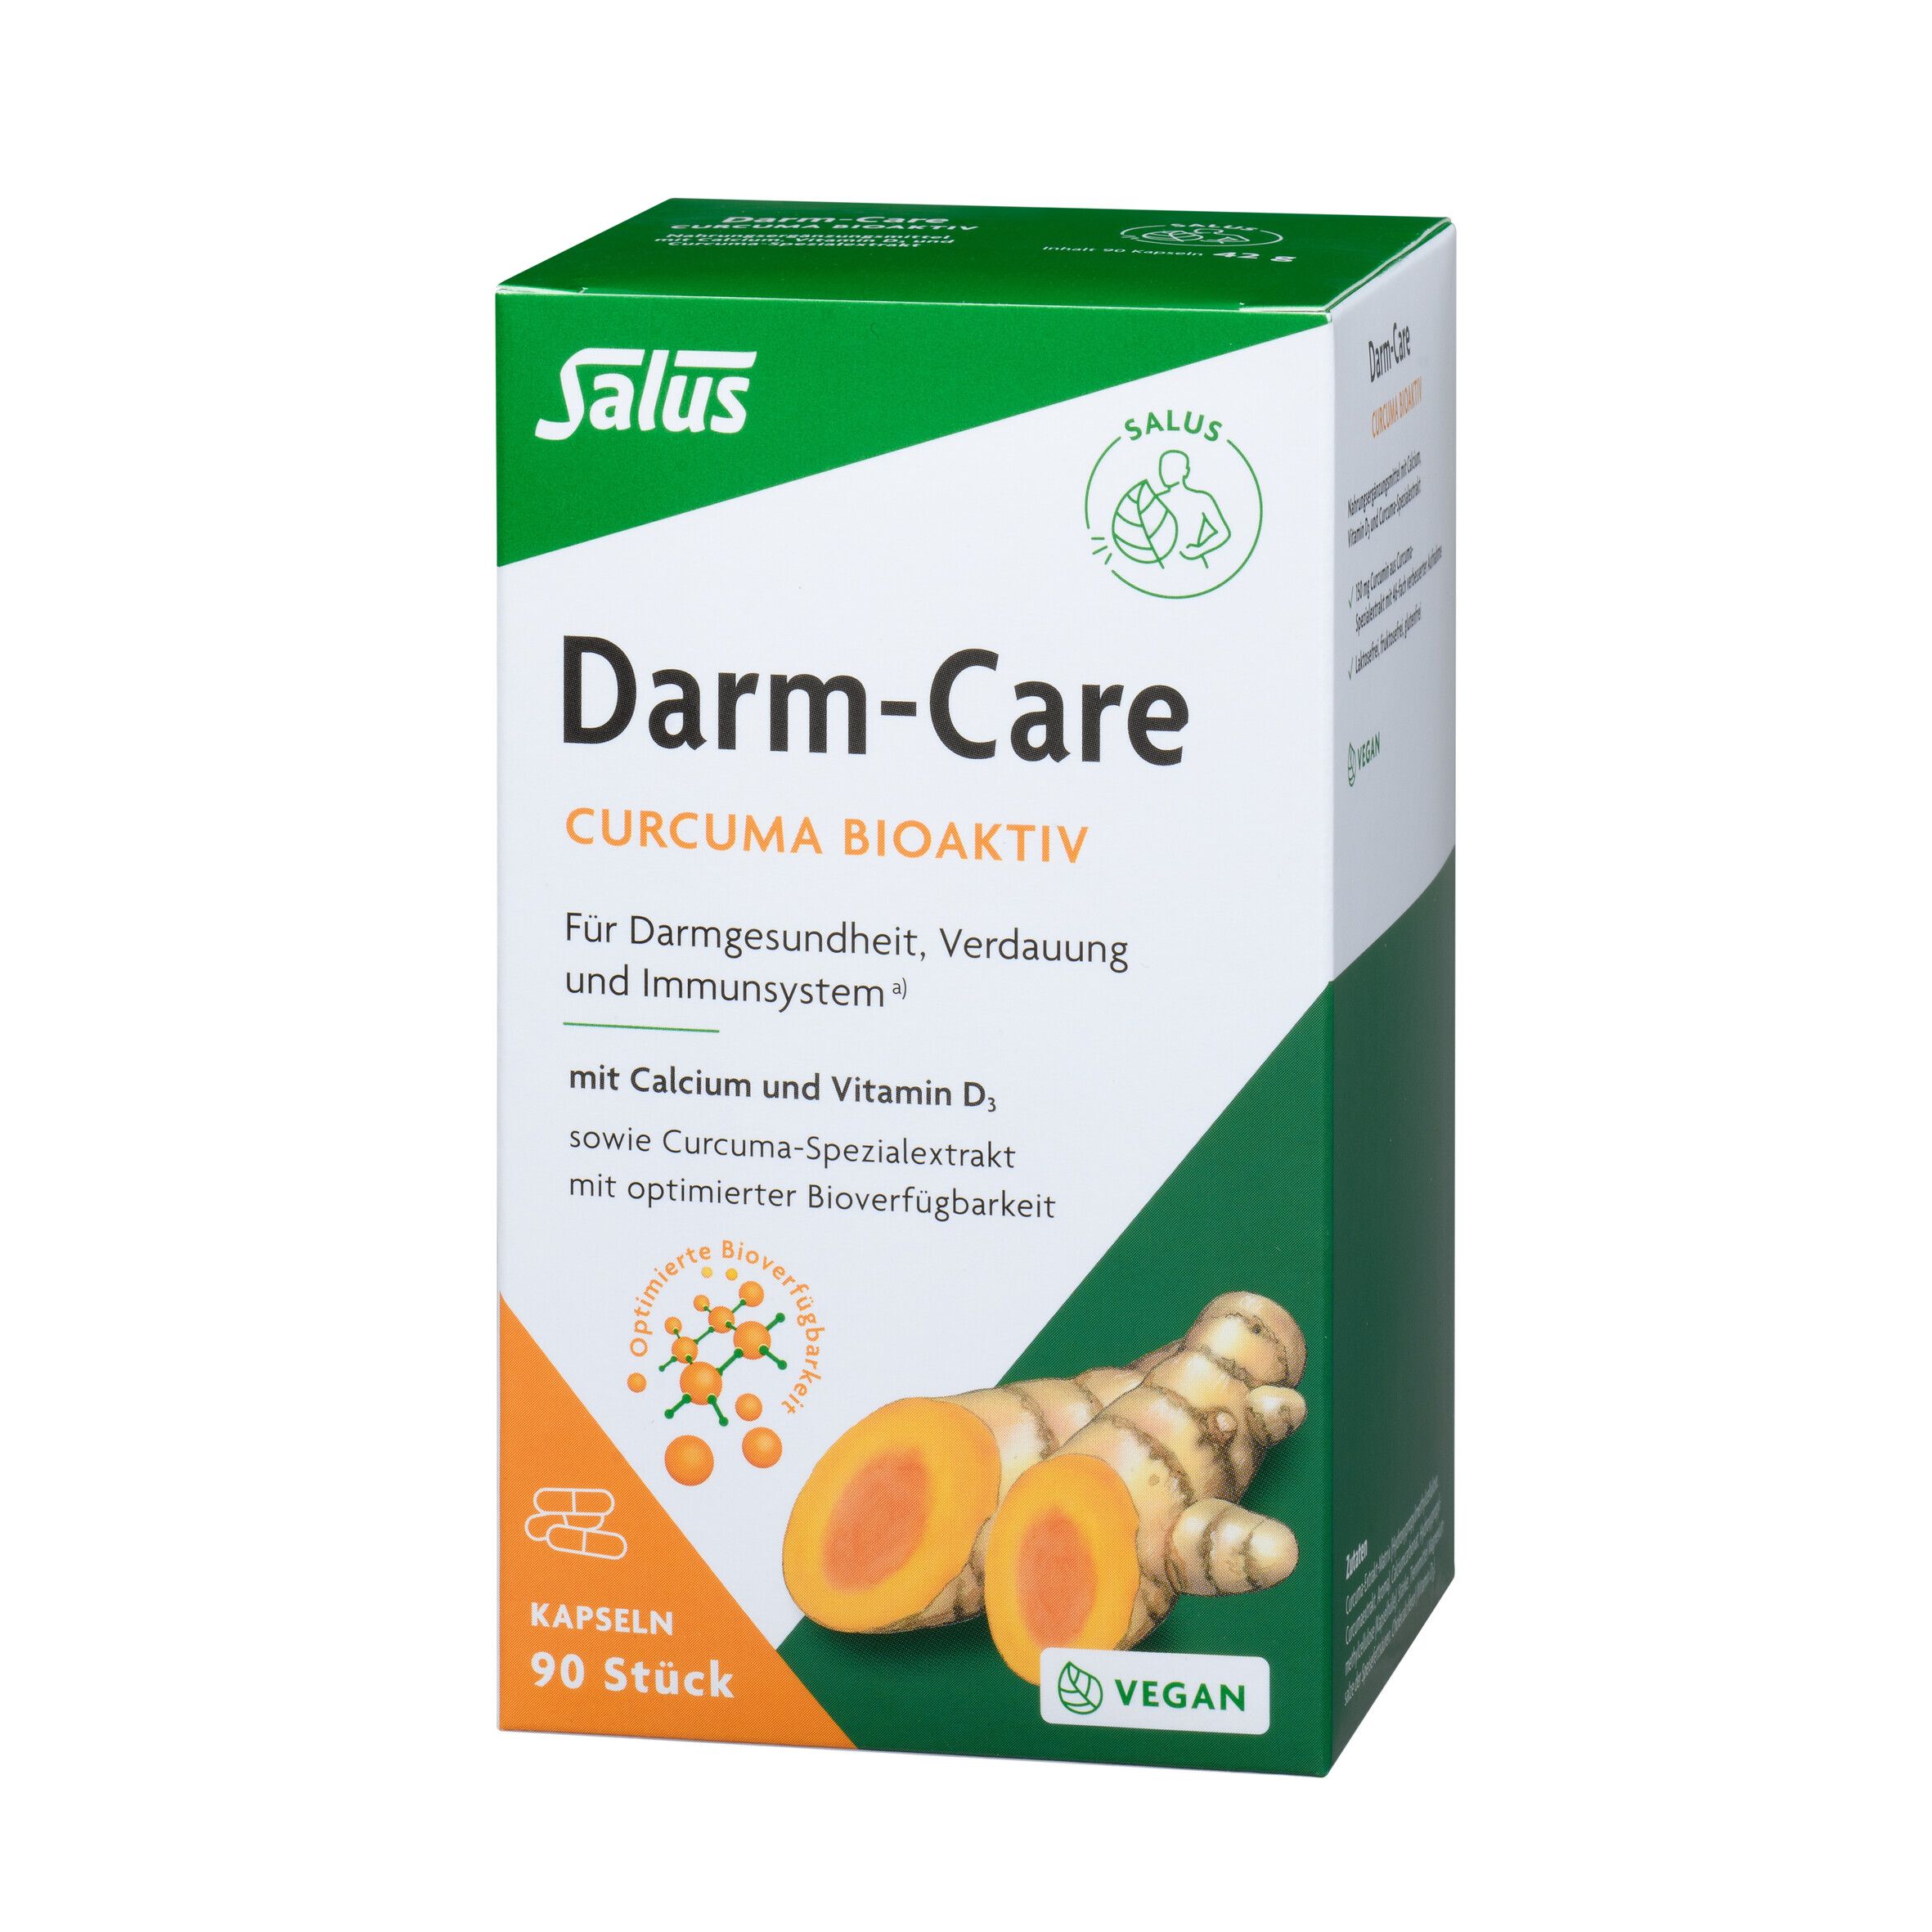 Salus® Darm-Care Curcuma Bioaktiv